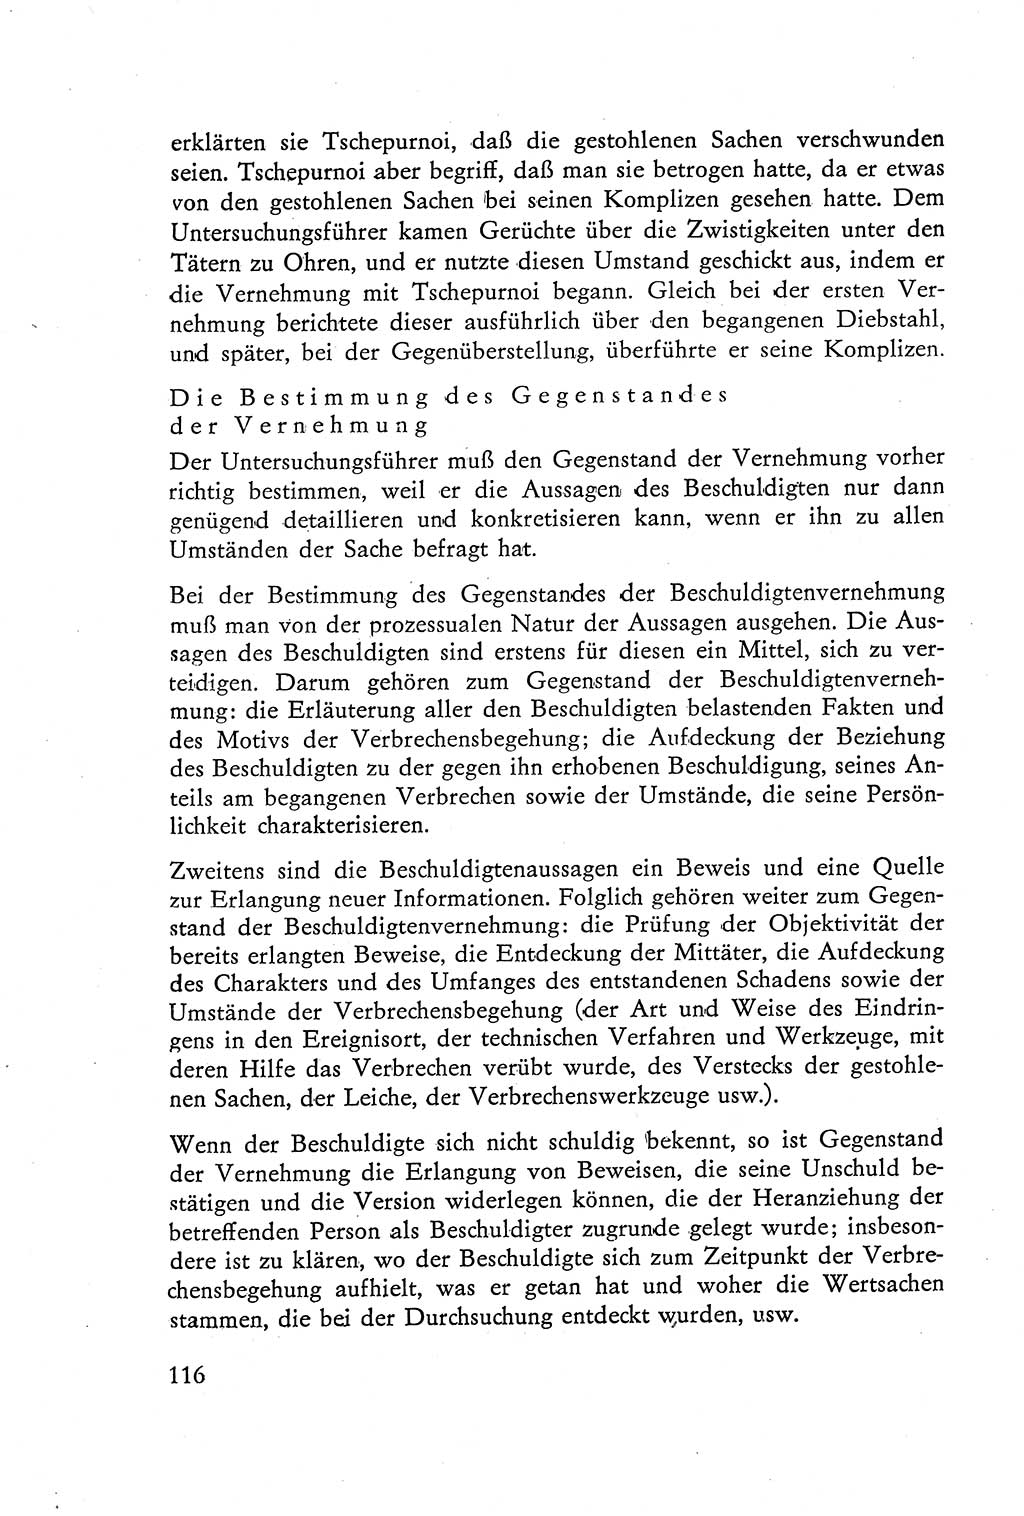 Die Vernehmung [Deutsche Demokratische Republik (DDR)] 1960, Seite 116 (Vern. DDR 1960, S. 116)